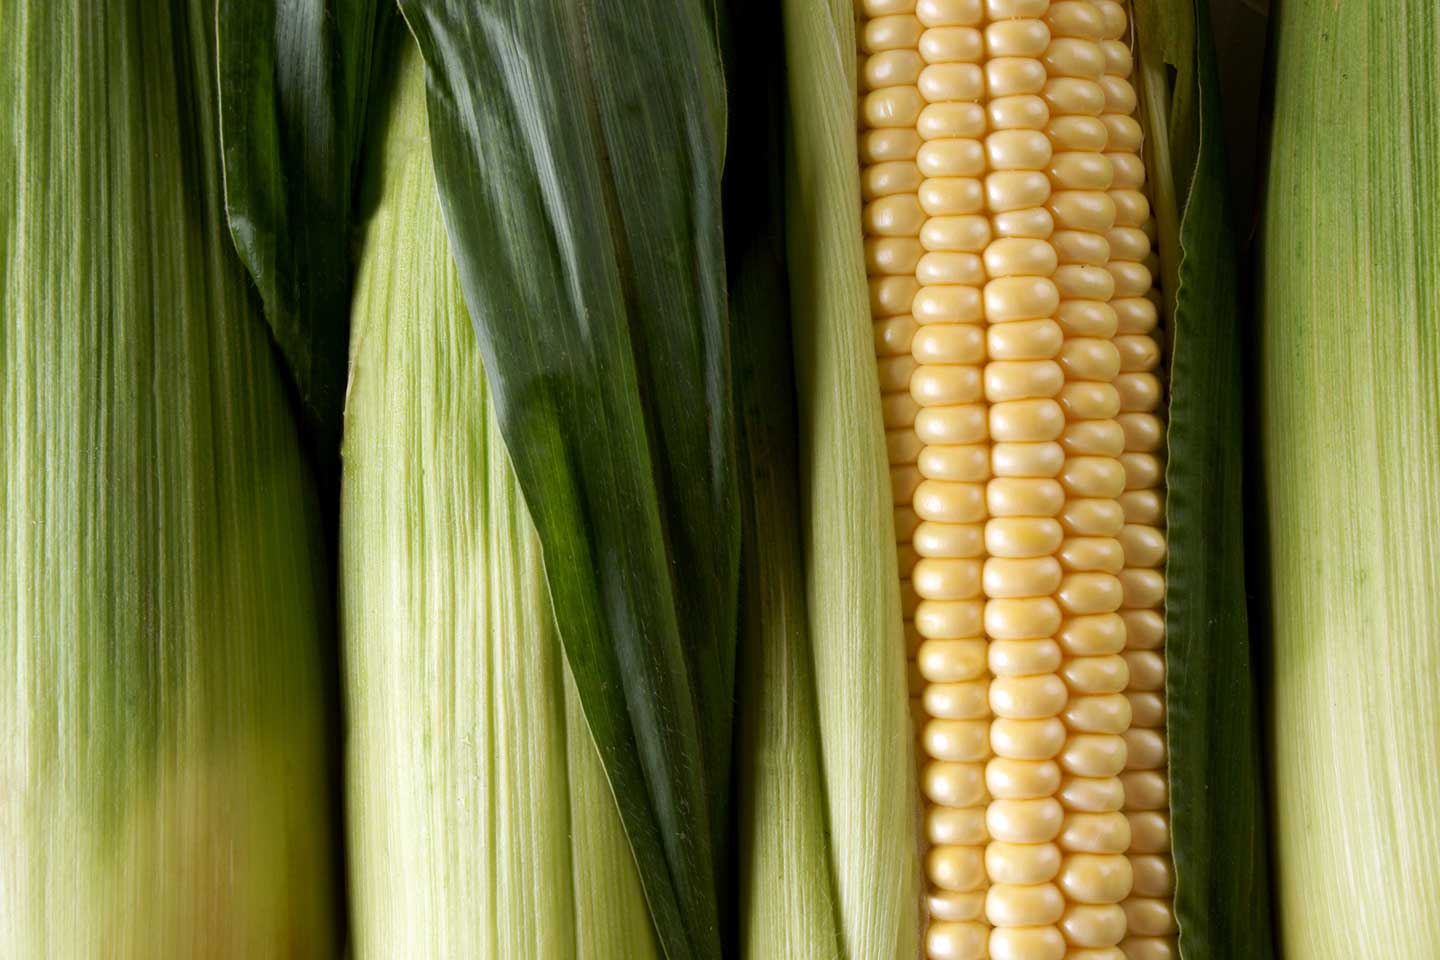 maize image